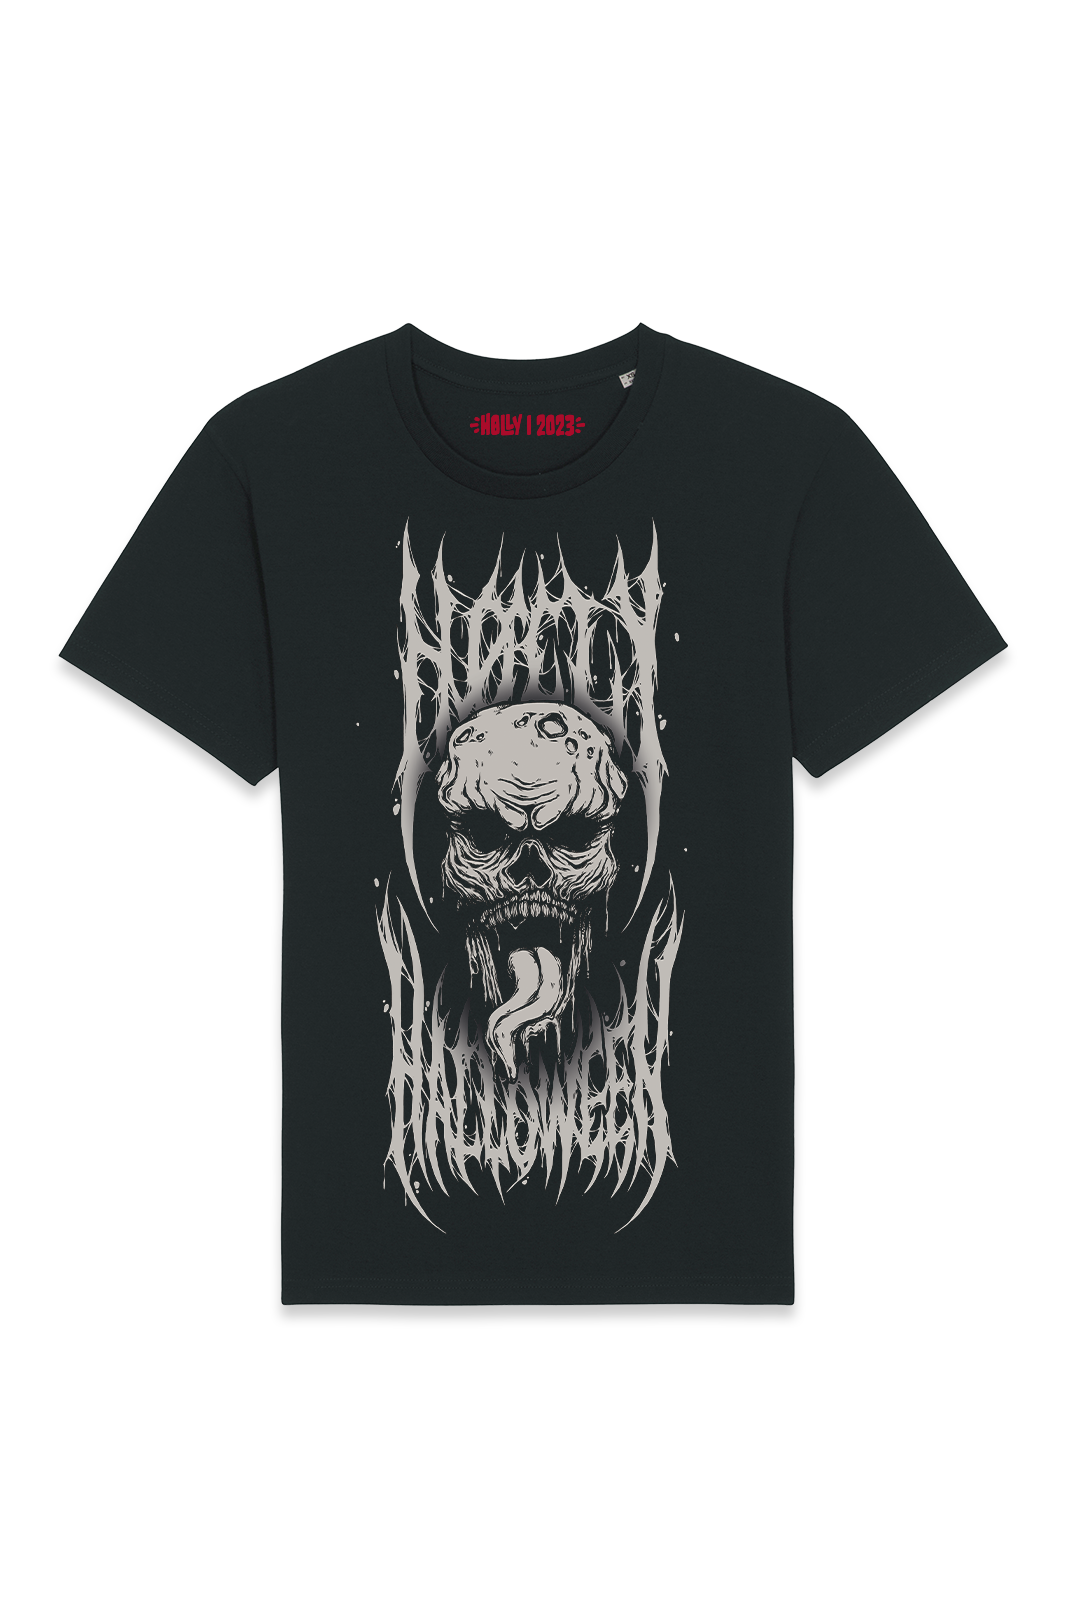 T-Shirt  - H0llyween - Skull